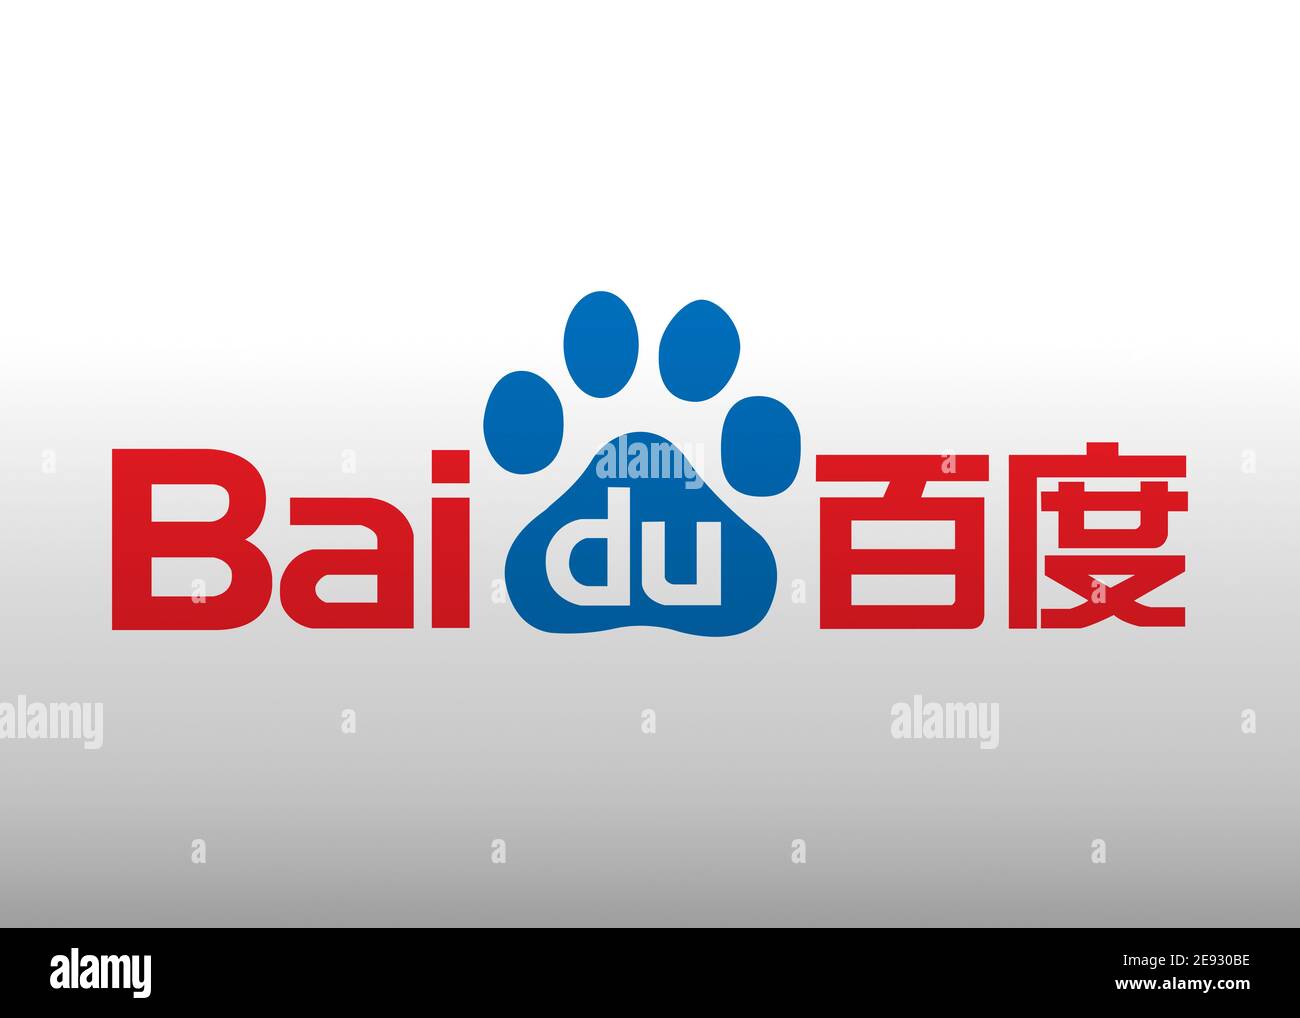 Bai du logo Stock Photo